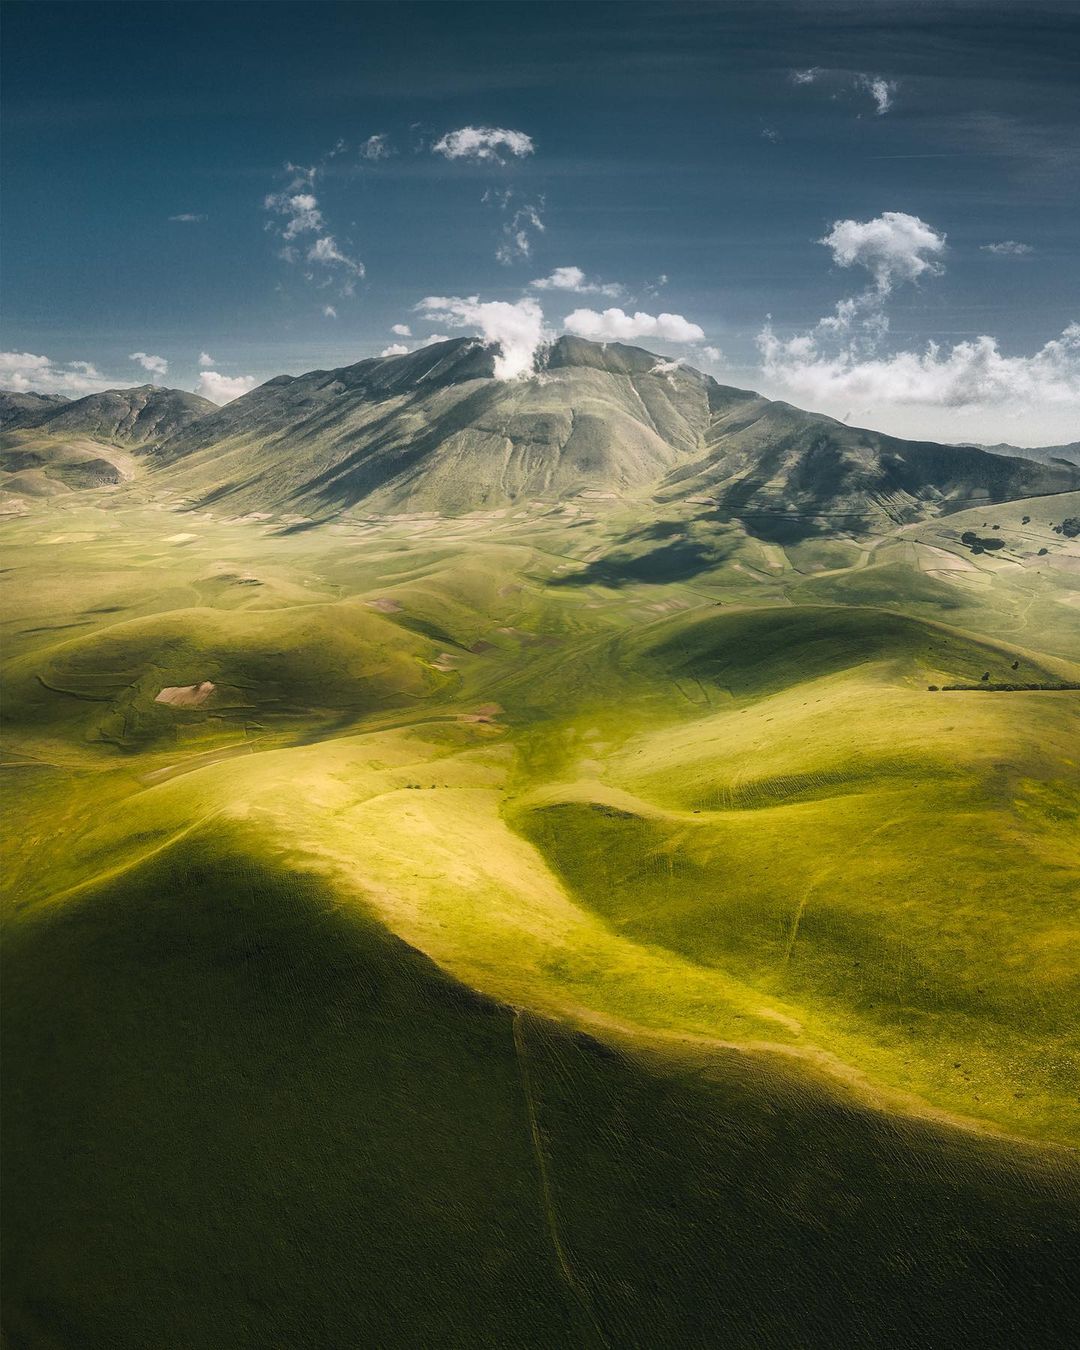 Захватывающие снимки из путешествий тревел-фотографа Мануэло Бечекко пейзажи,природа,тревел-фото